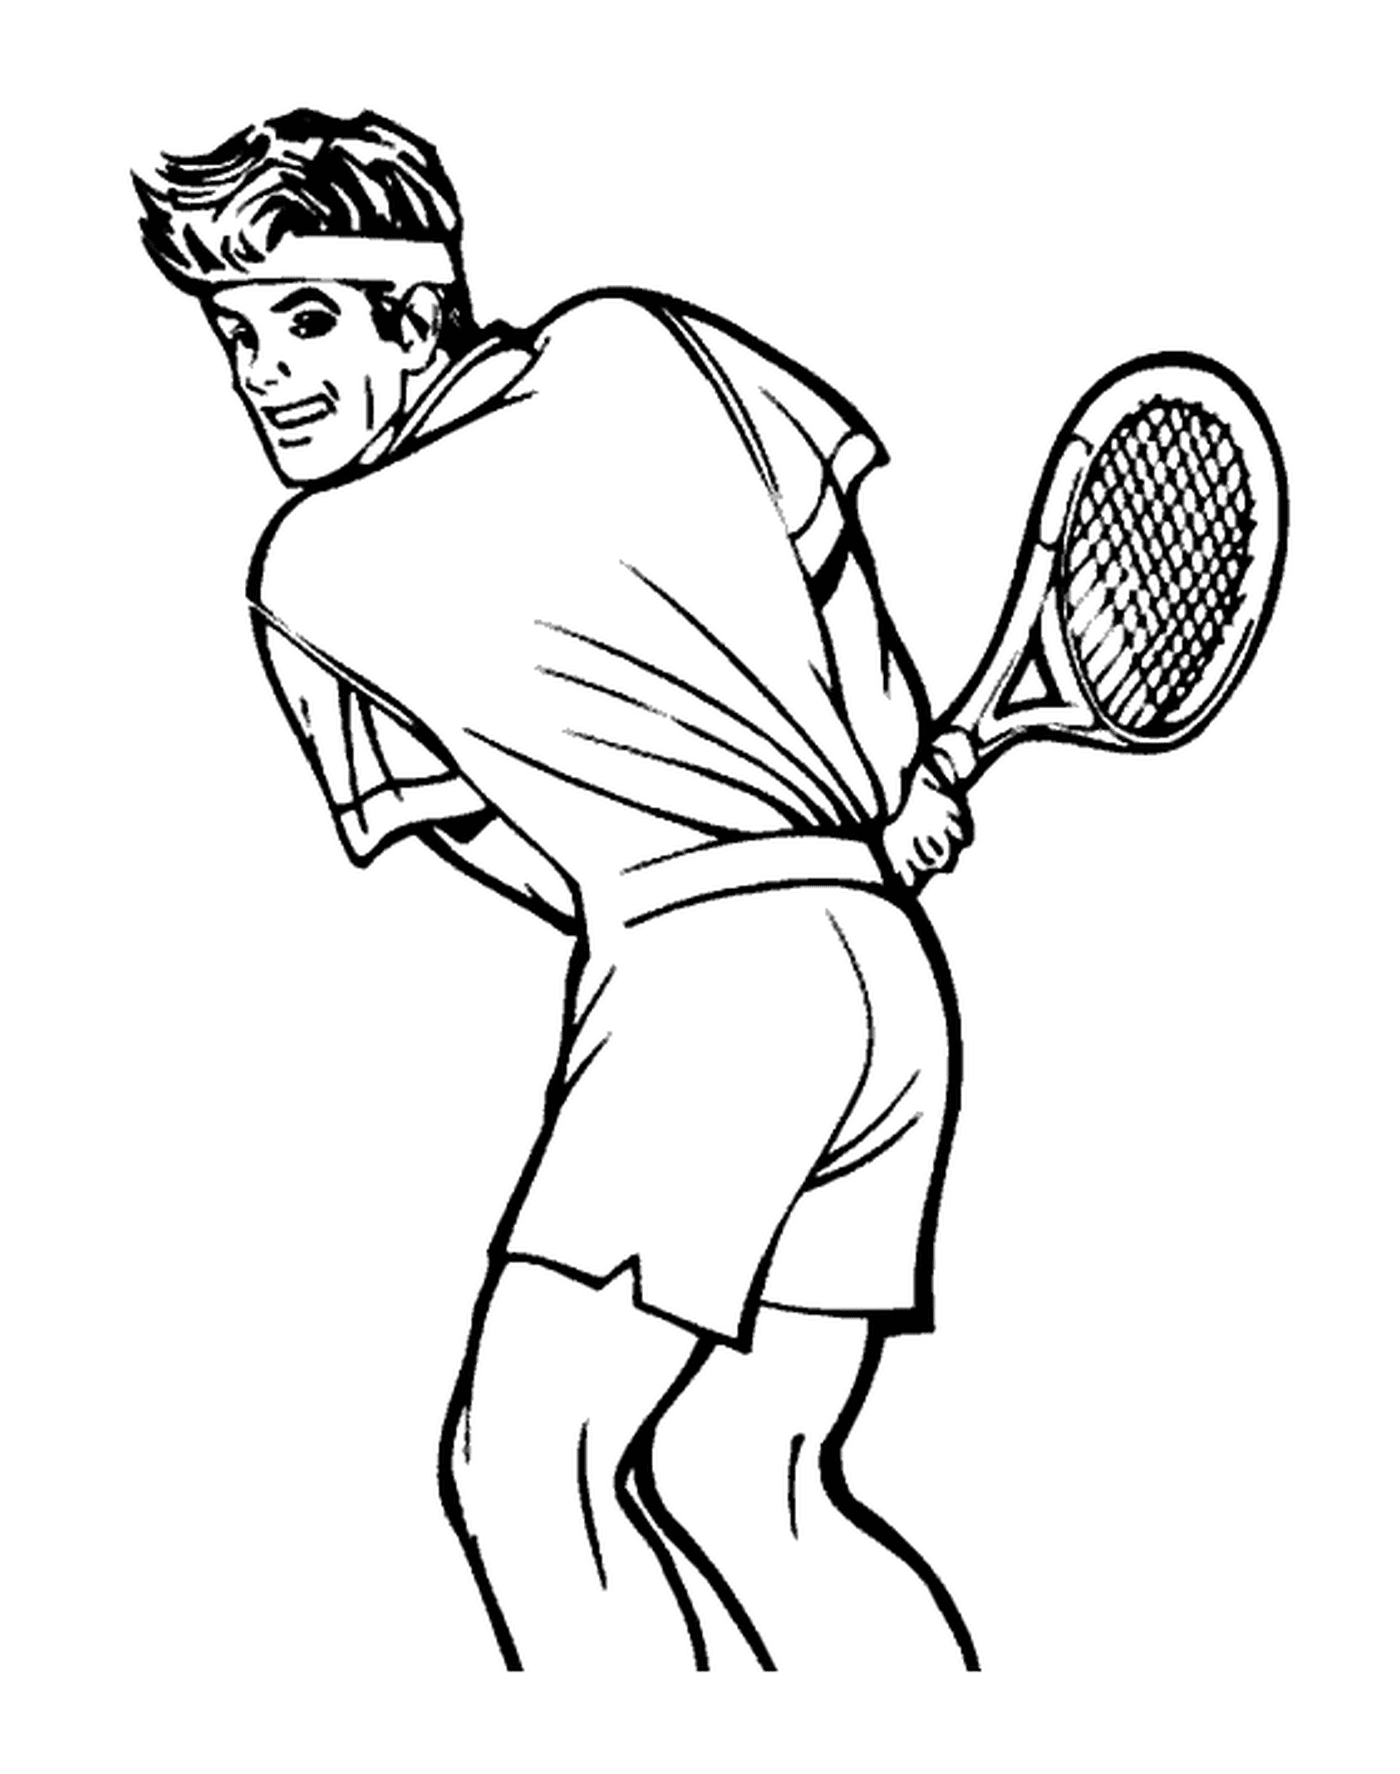   Un joueur de tennis sur le court 